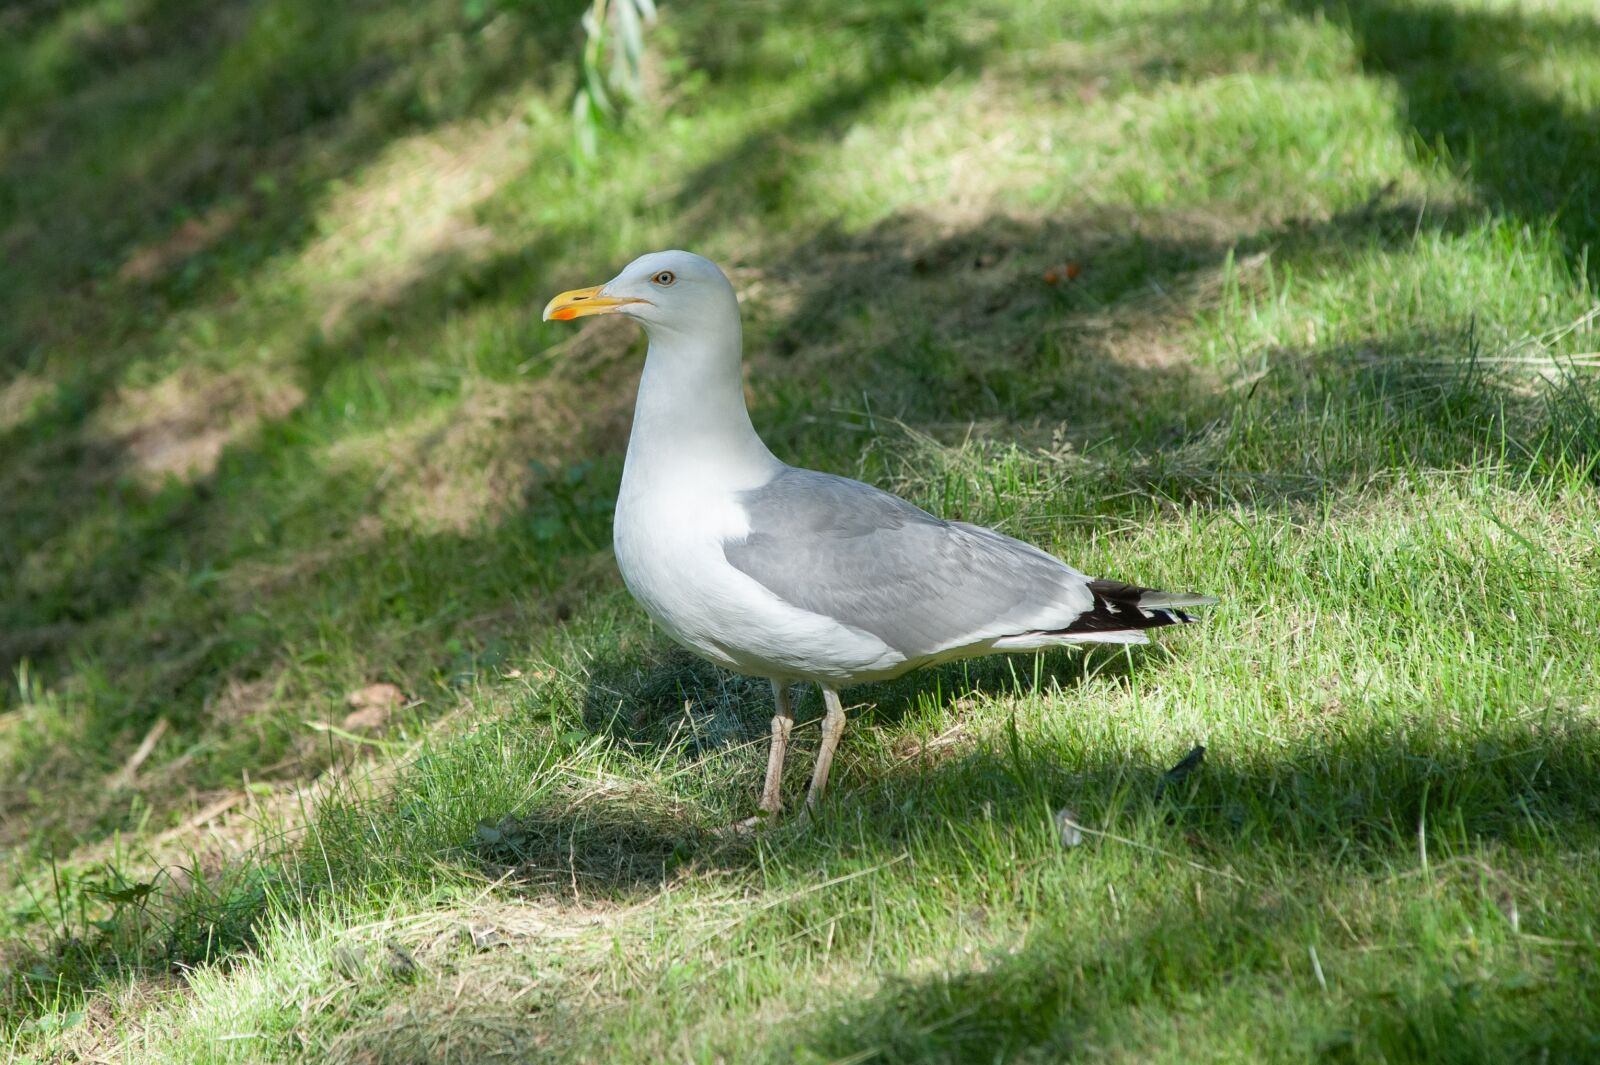 Nikon D700 sample photo. Seagull, bird, nature photography